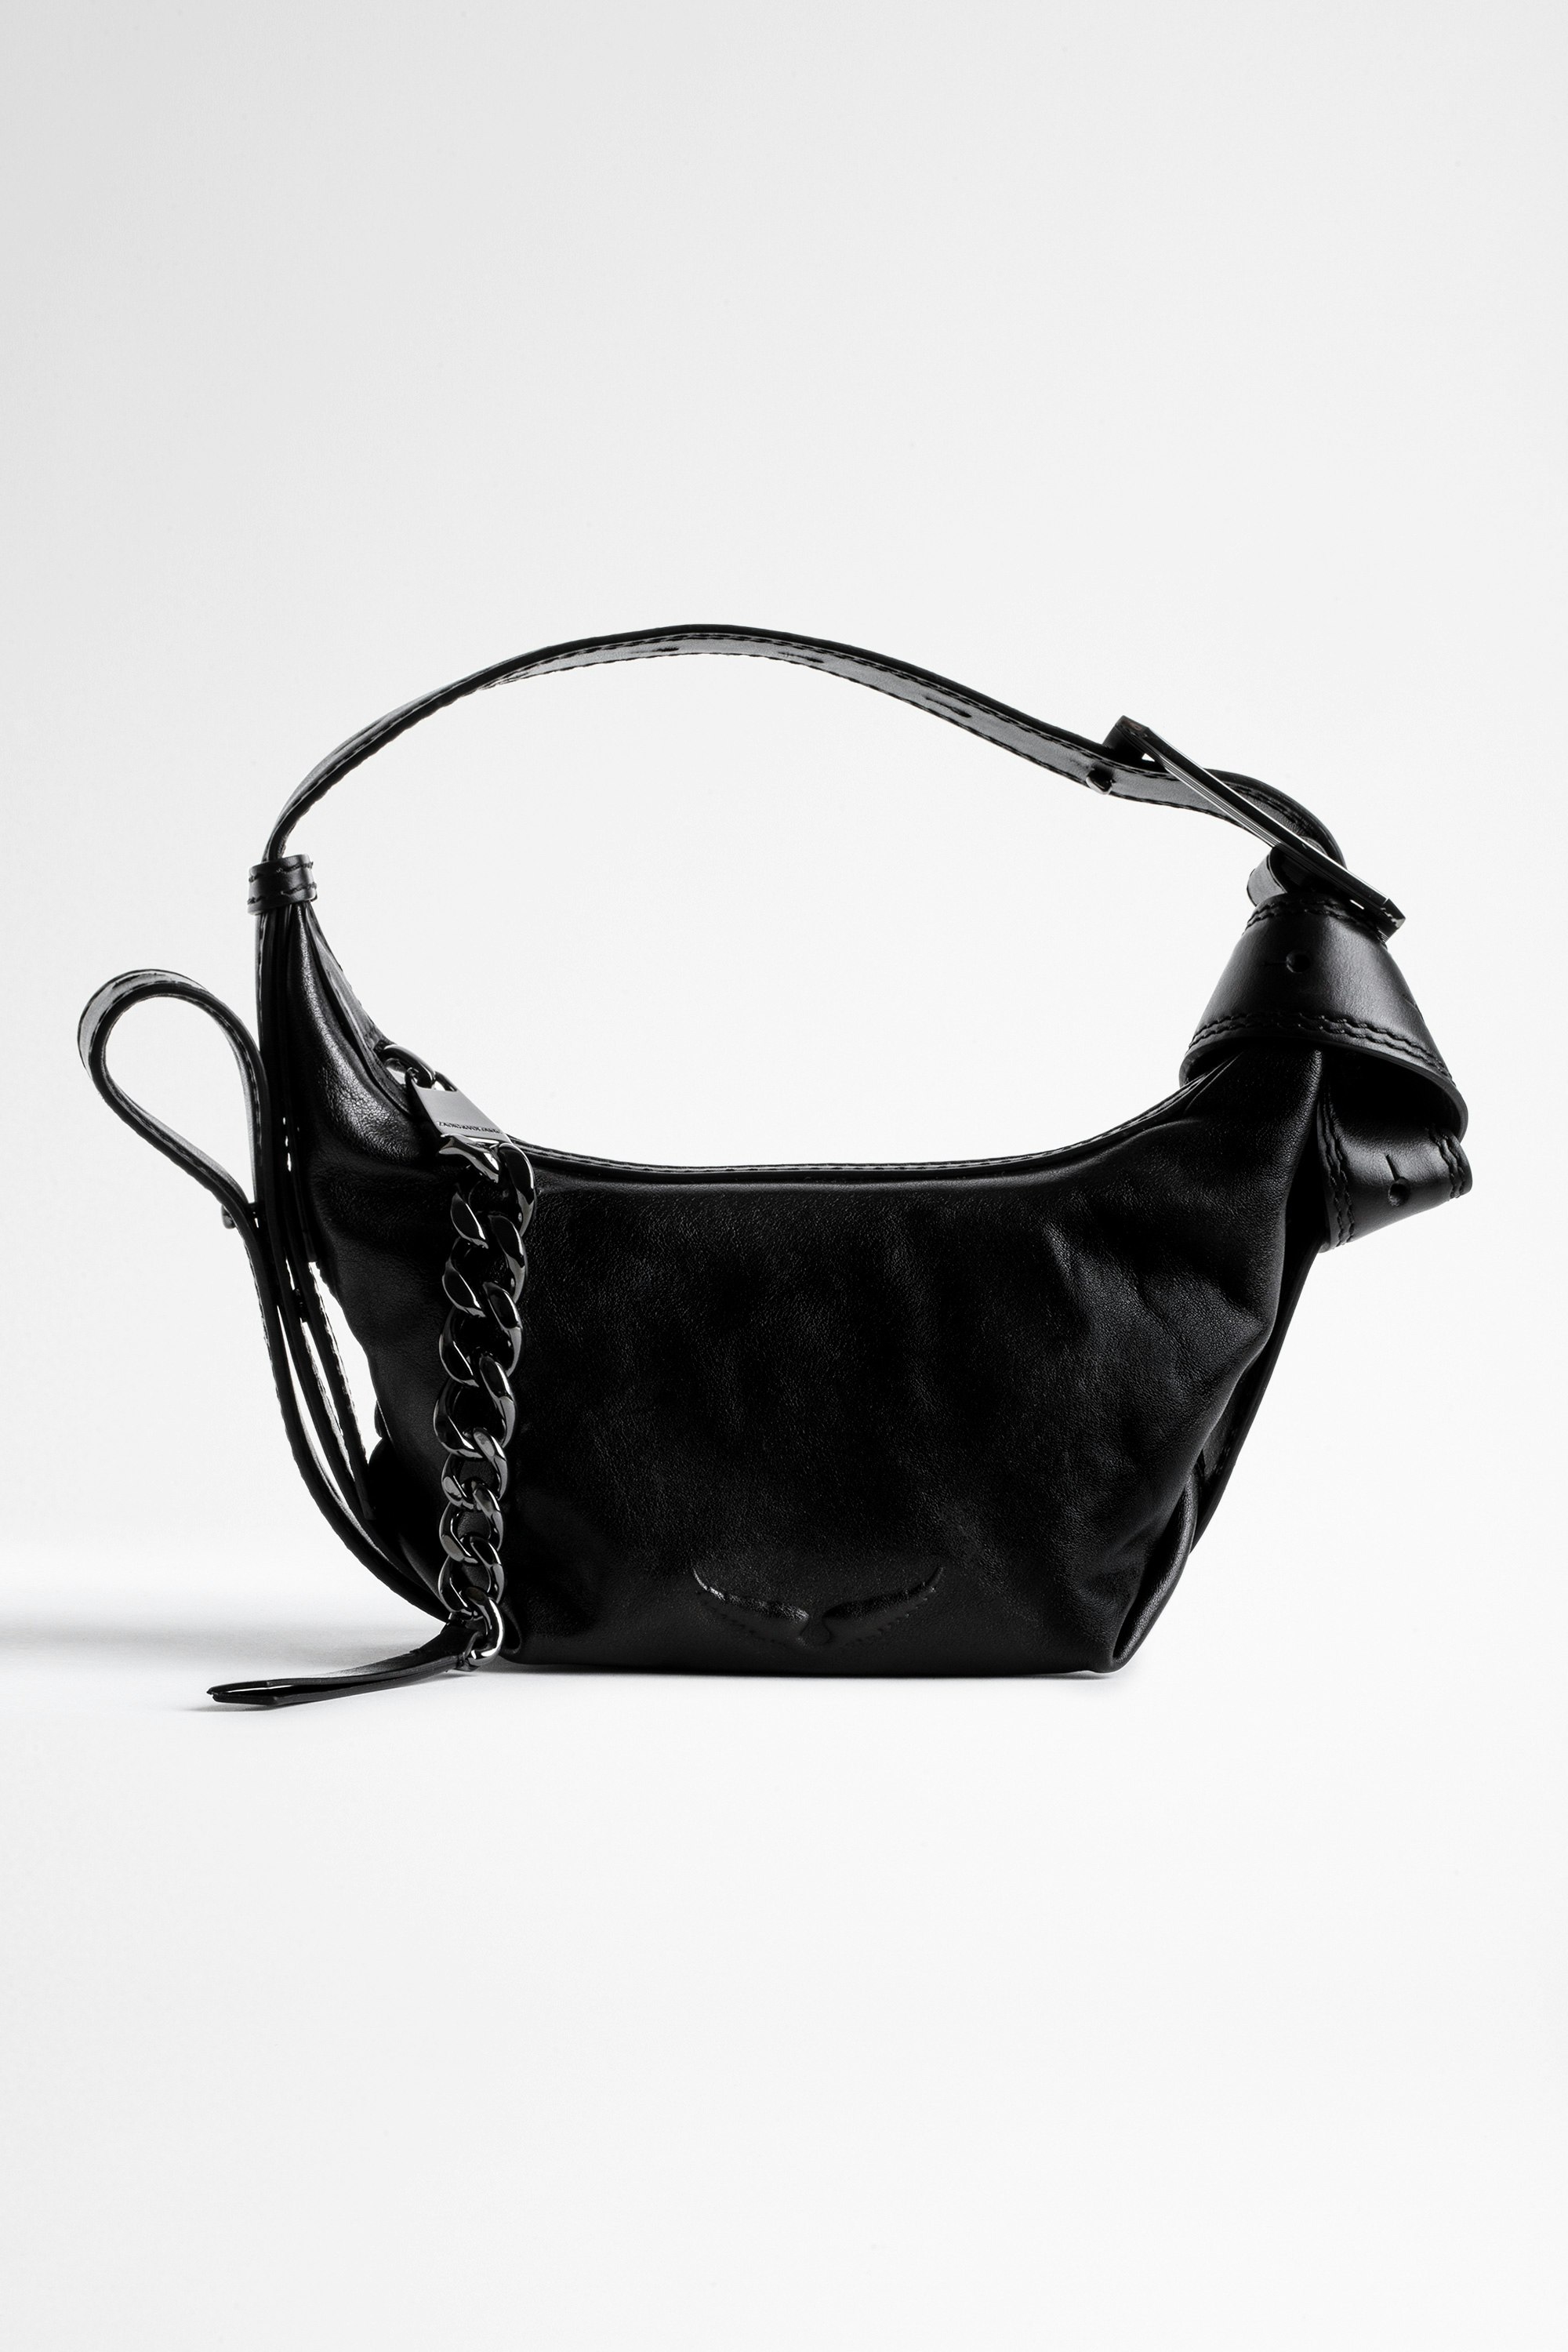 Handtasche Le Cecilia XS Ikonische Damen-Handtasche Le Cecilia XS aus schwarzem, pflanzlich gegerbtem, italienischem Leder.